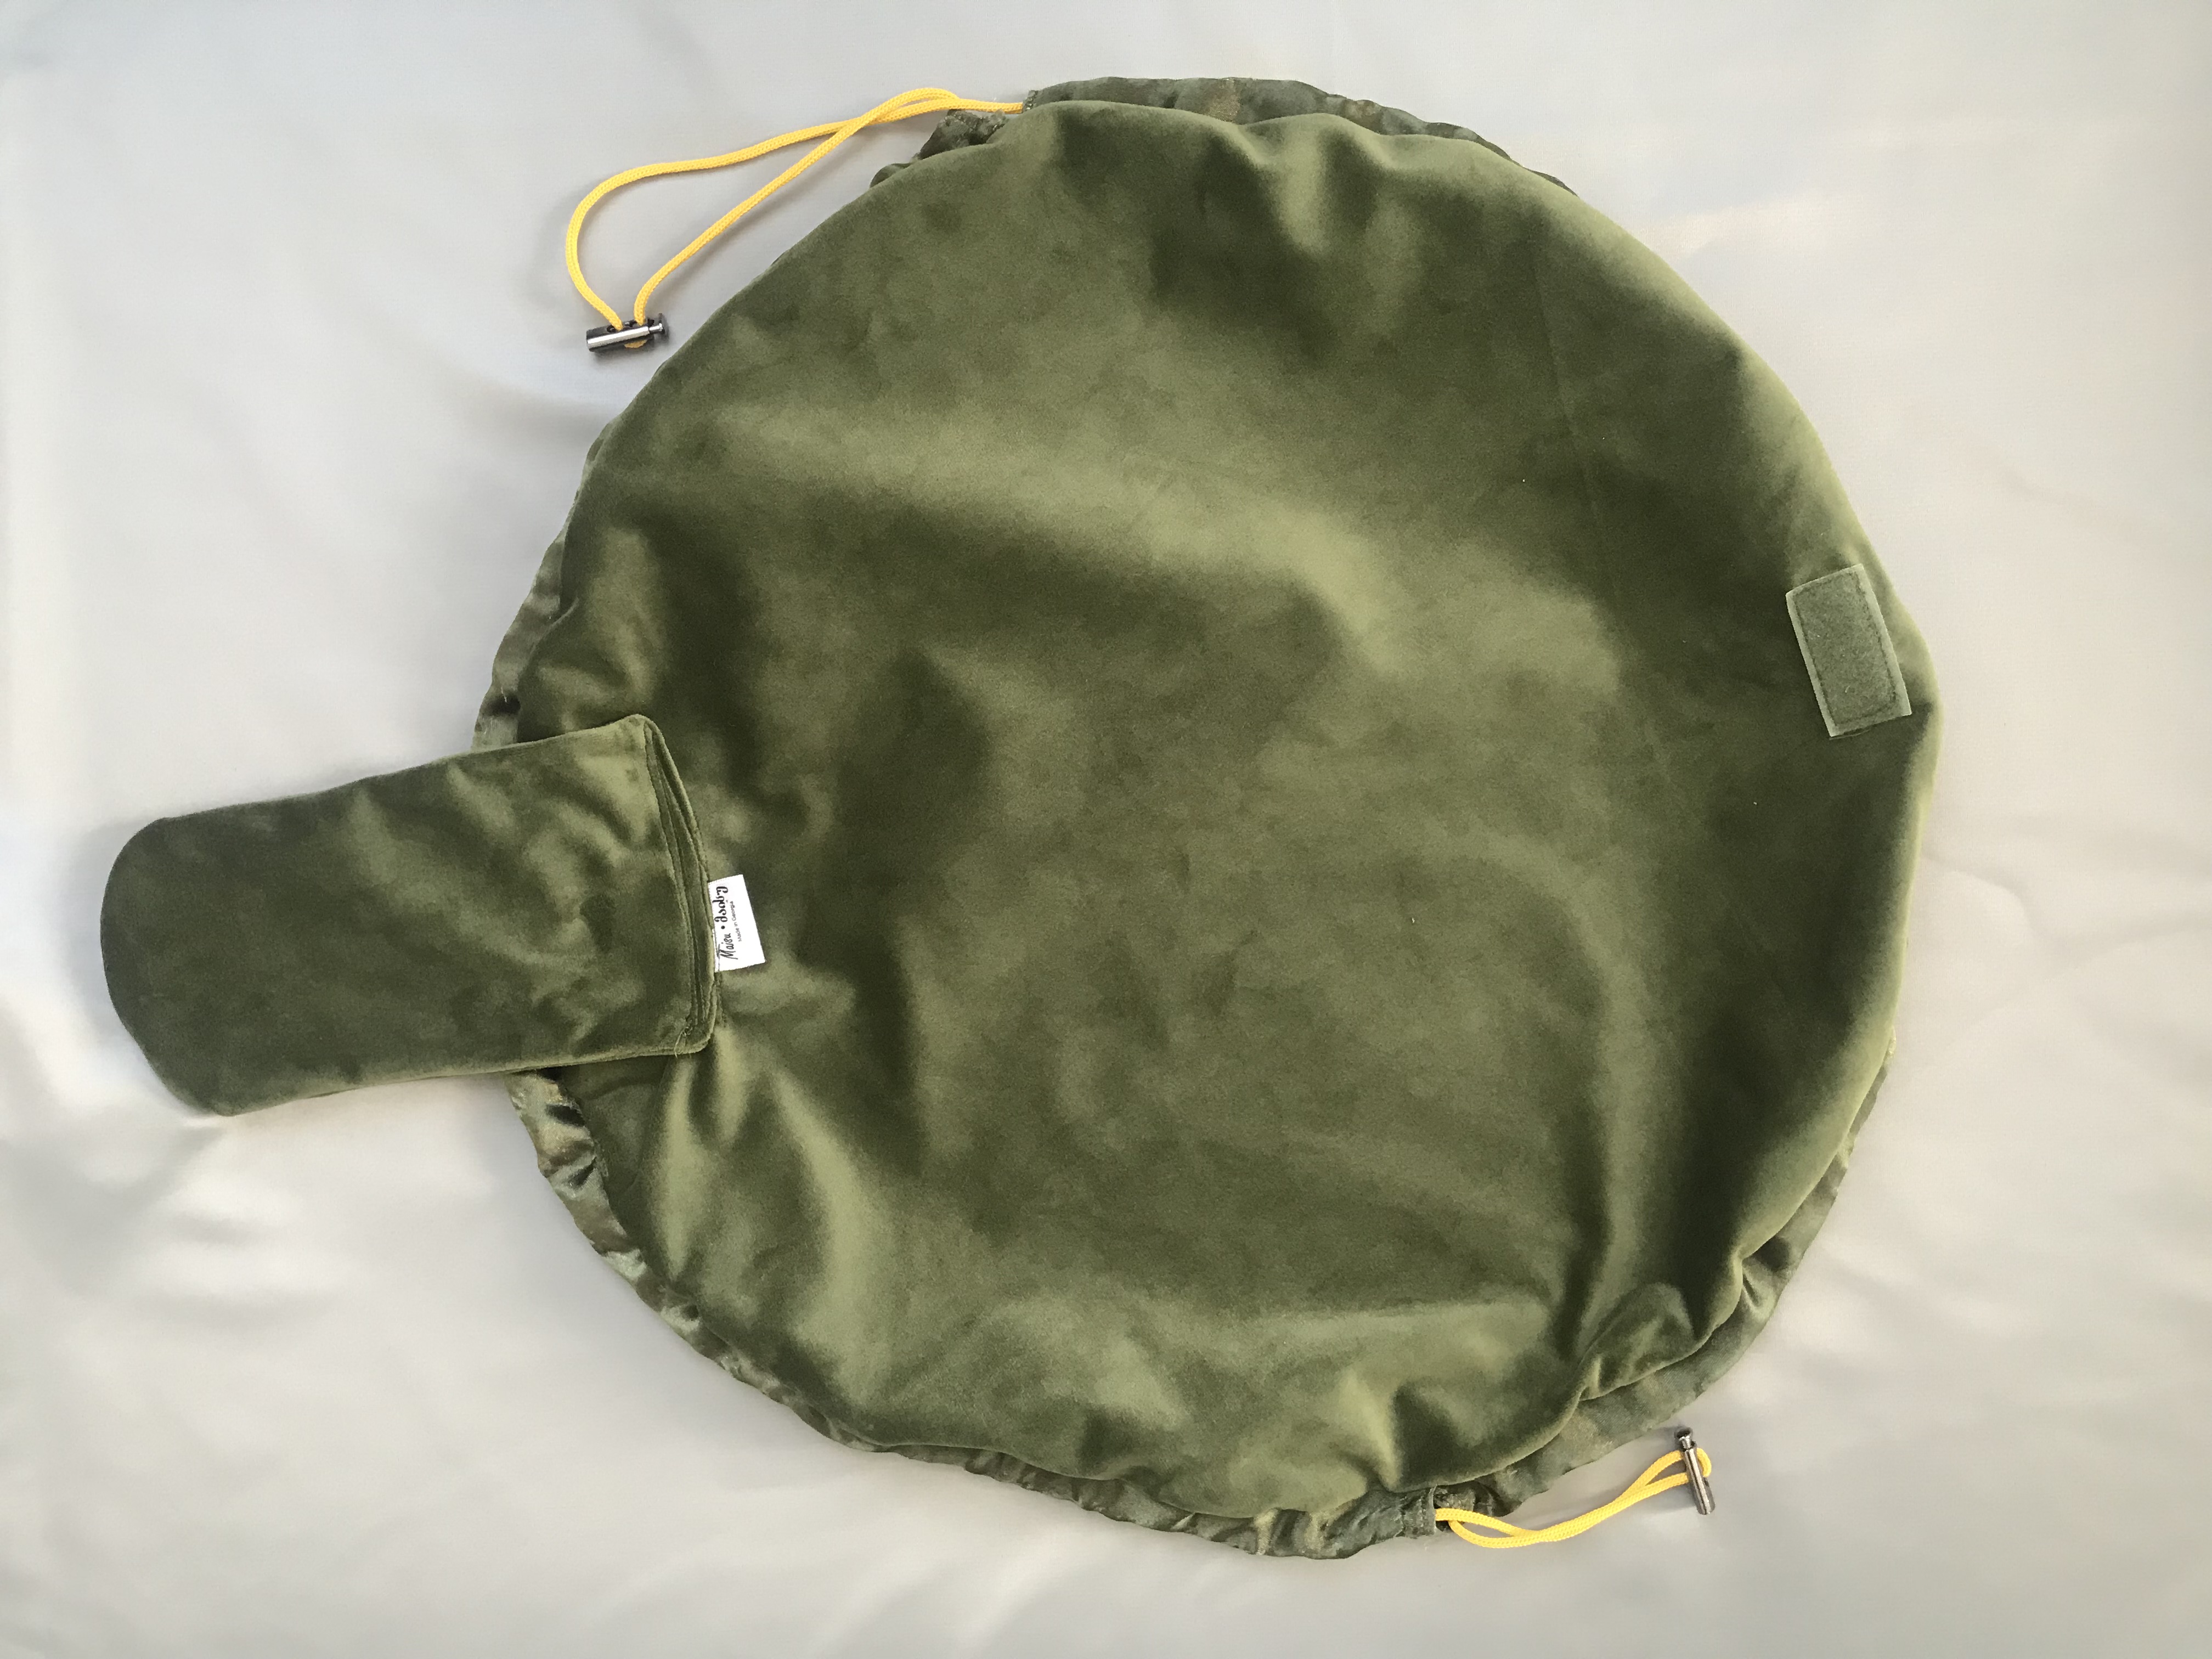 მწვანე მაკიაჟის ჩანთა